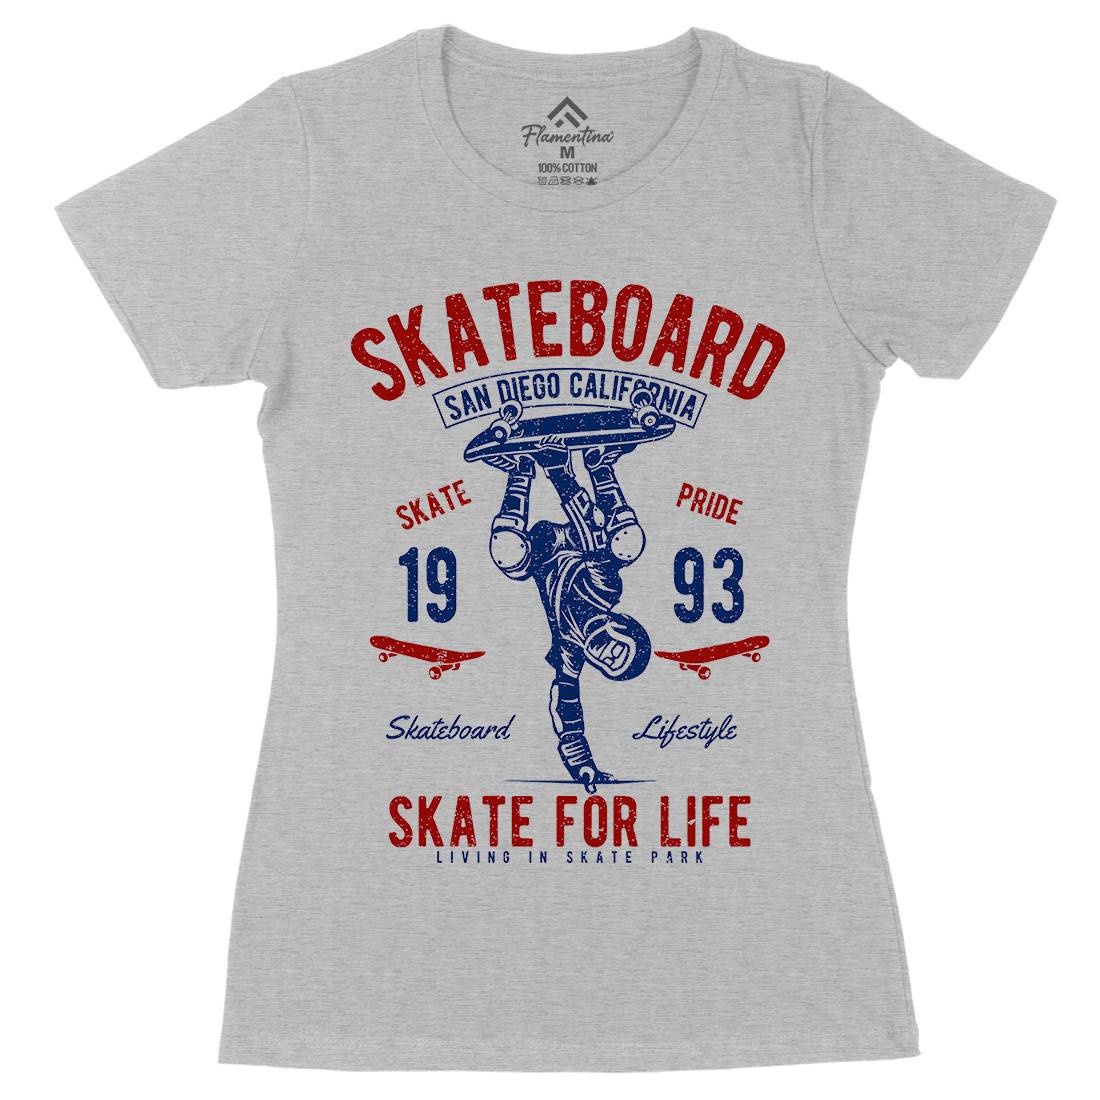 Skate For Life Womens Organic Crew Neck T-Shirt Skate A143